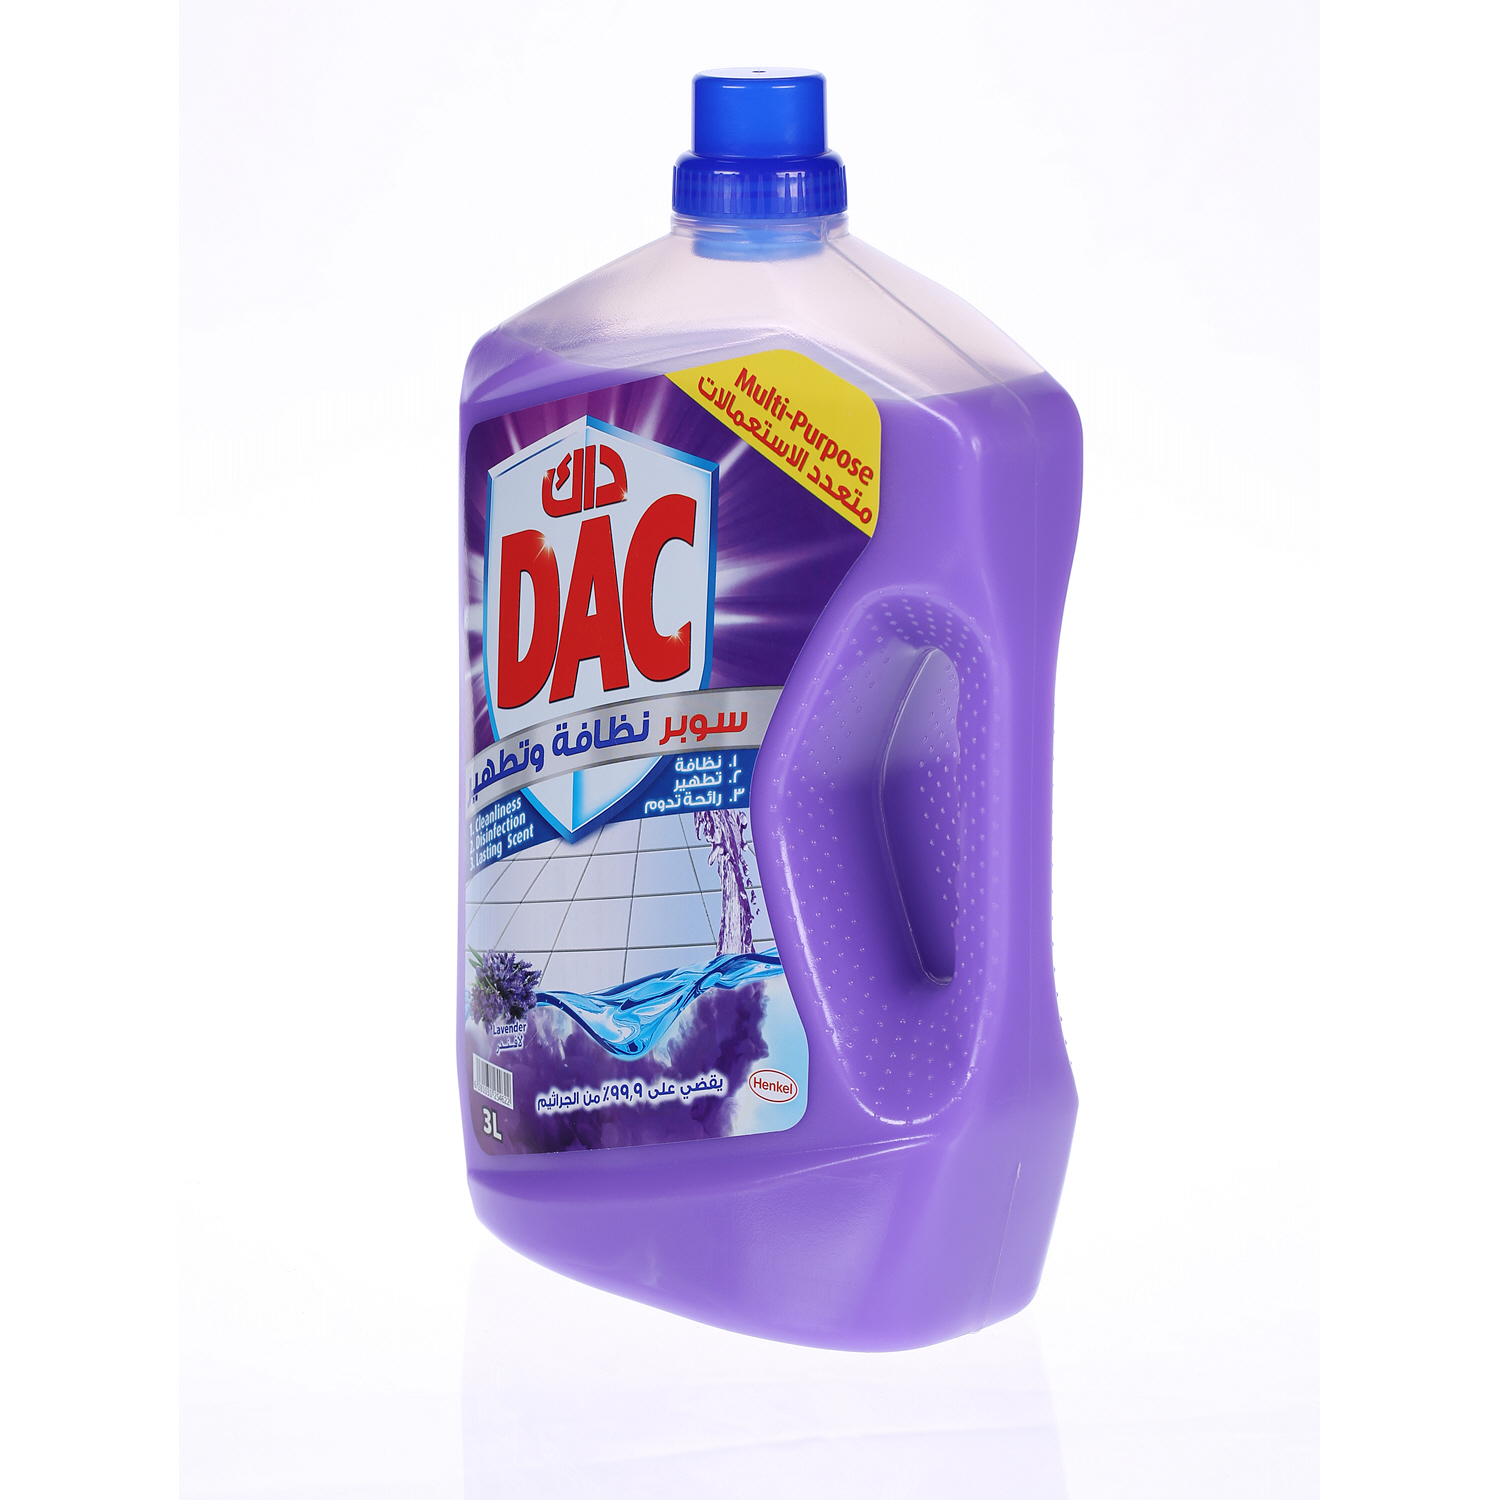 Dac Disinfectant Plus Multi Purpose Lavender 3 L